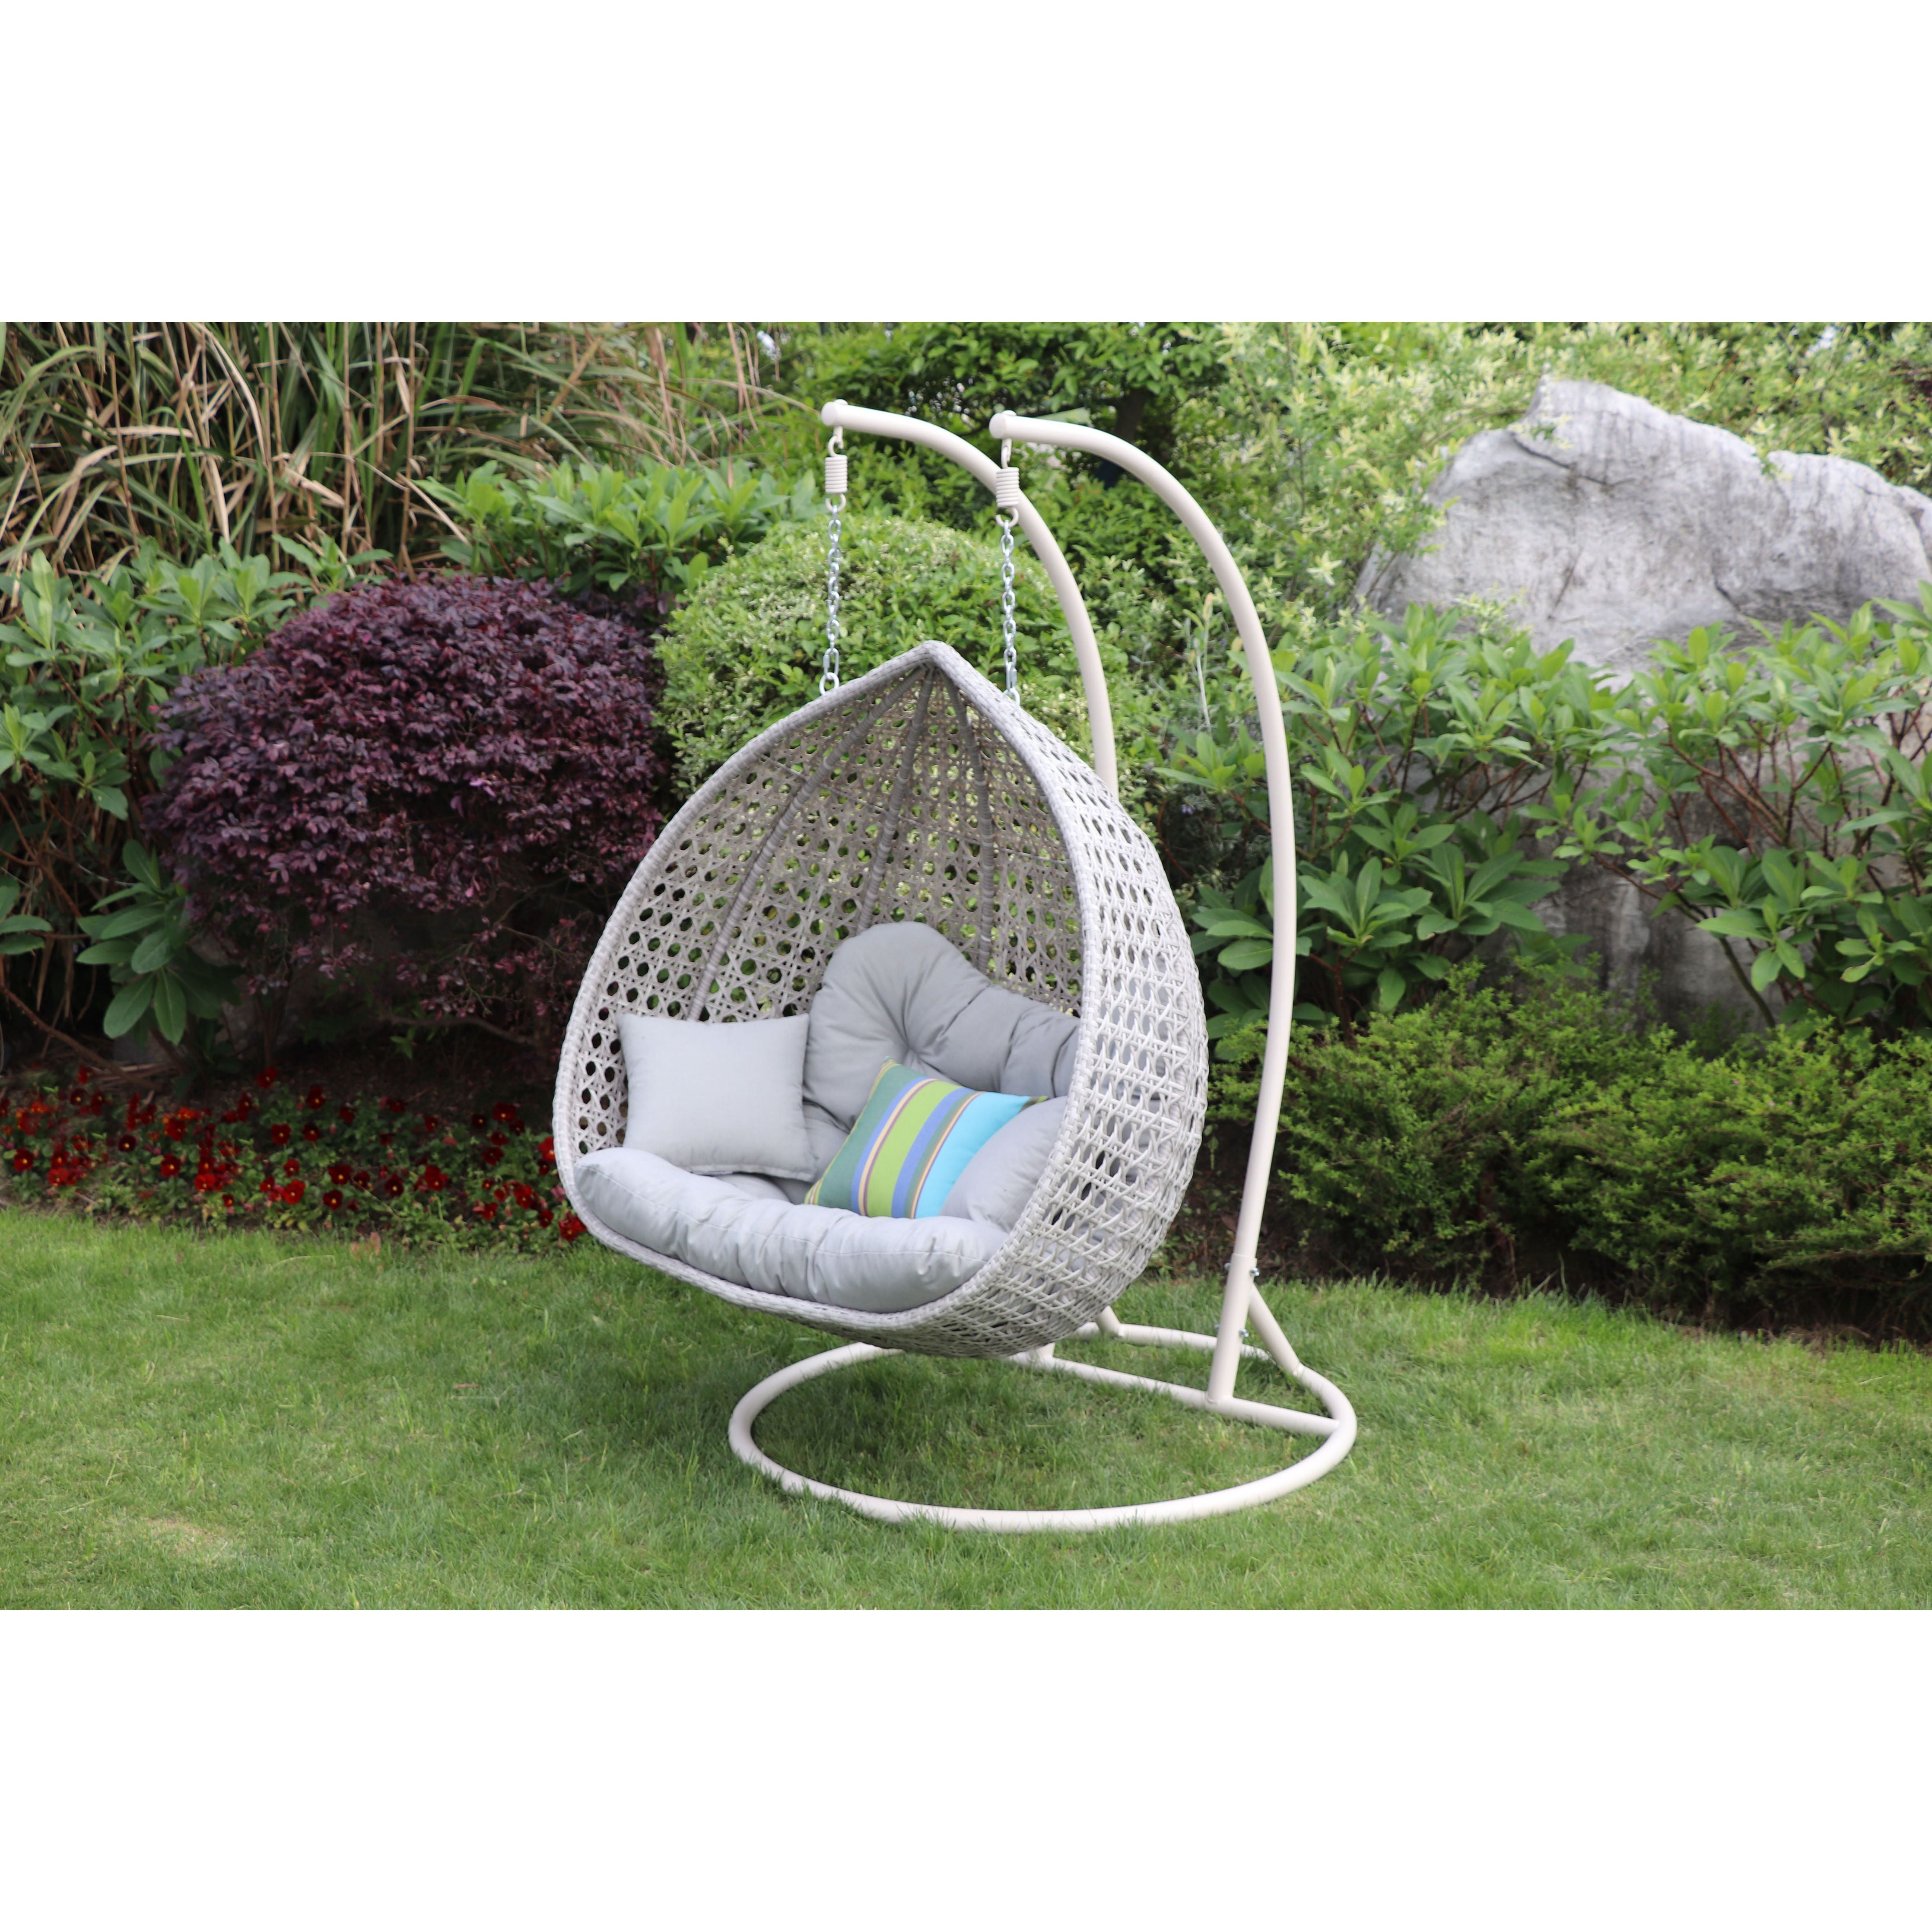 Double Hanging Garden Chair